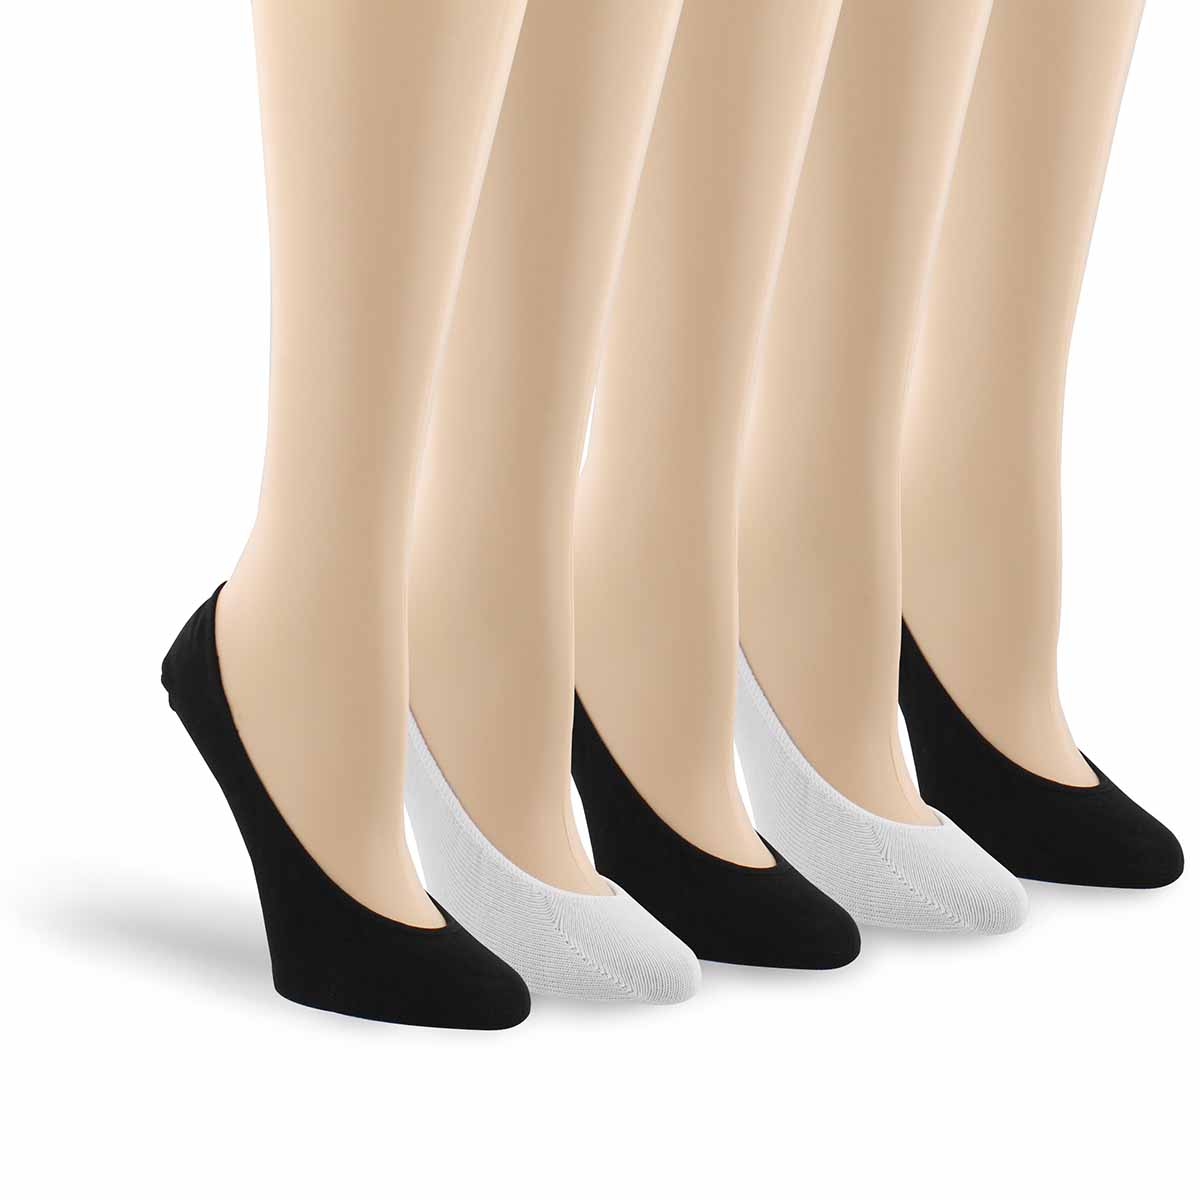 Women's LINER black/white socks - 5 pk